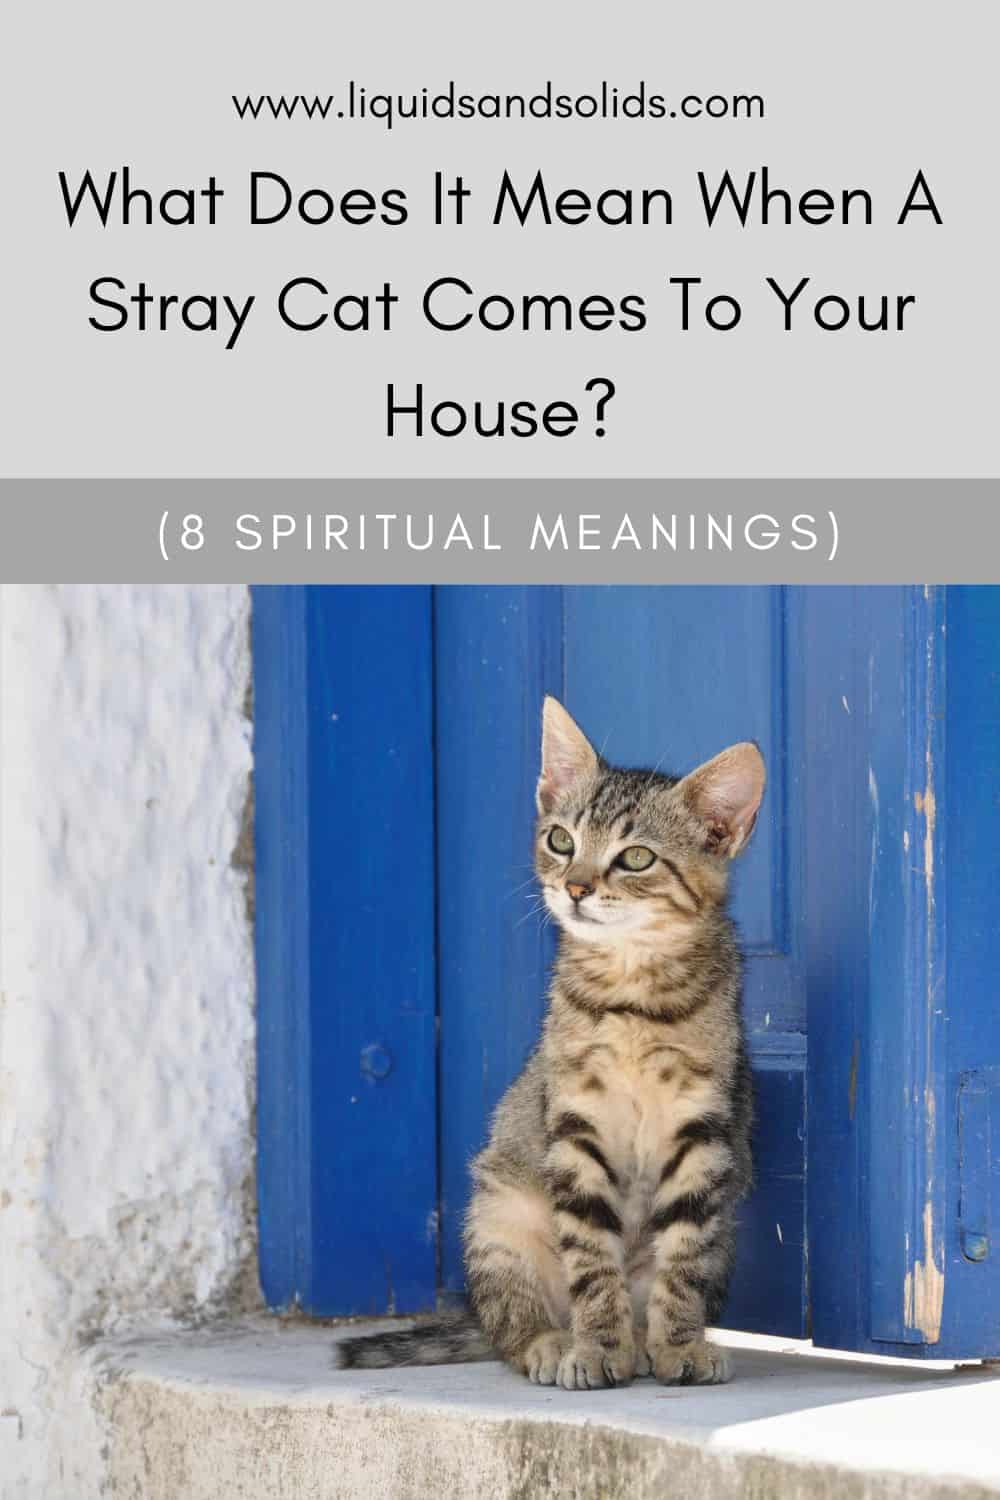  ماذا يعني عندما تأتي قطة ضالة إلى منزلك؟ (8 معاني روحية)